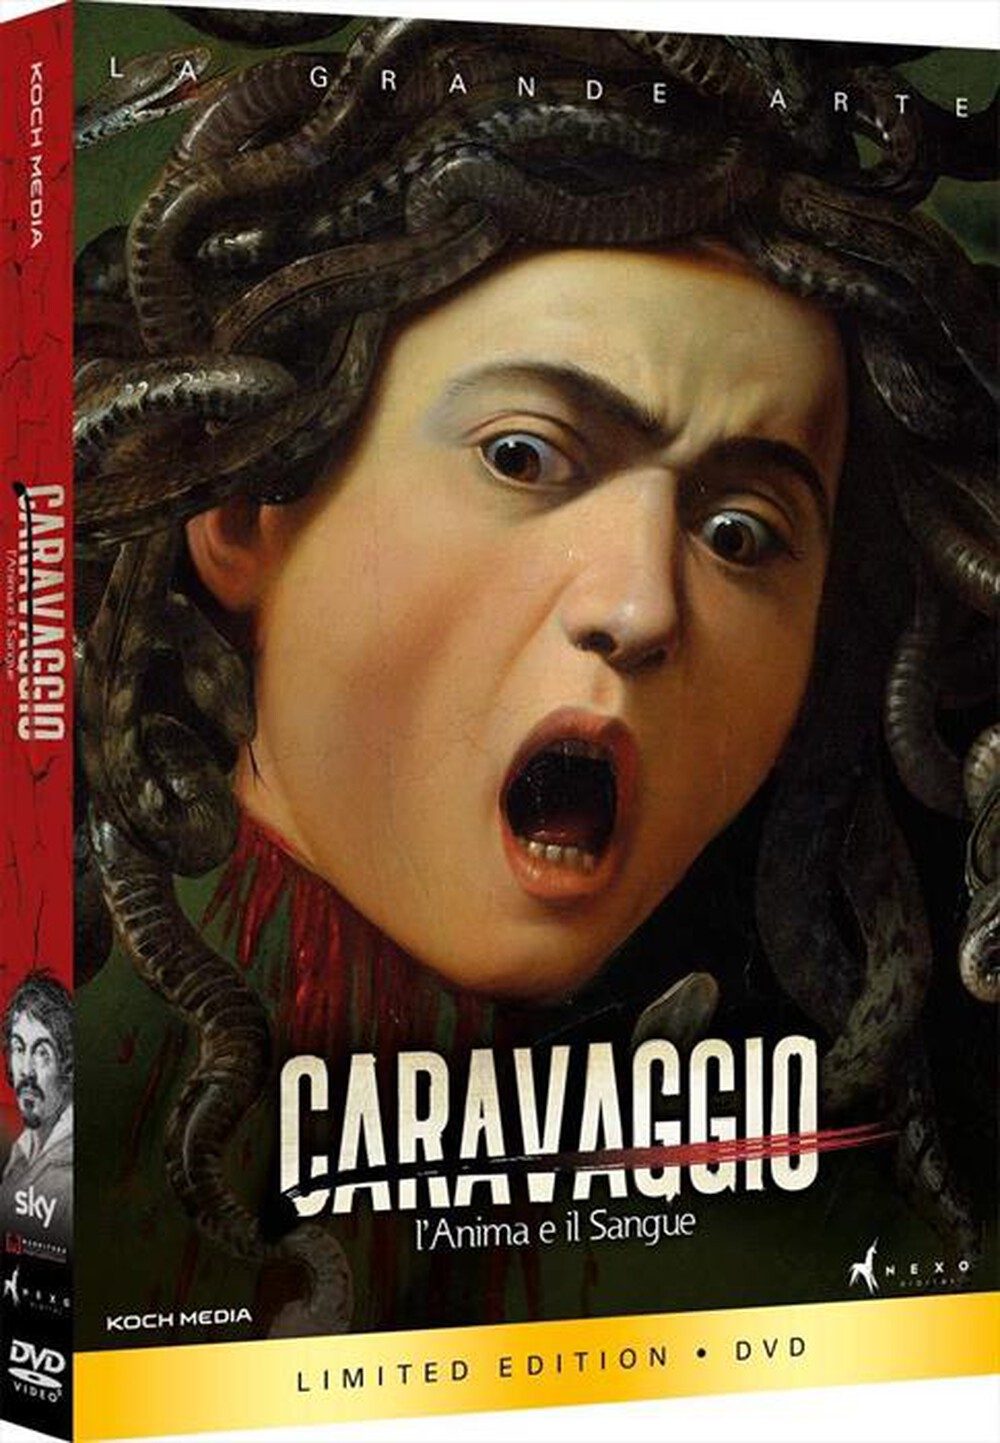 "Nexo Digital - Caravaggio - L'Anima E Il Sangue"